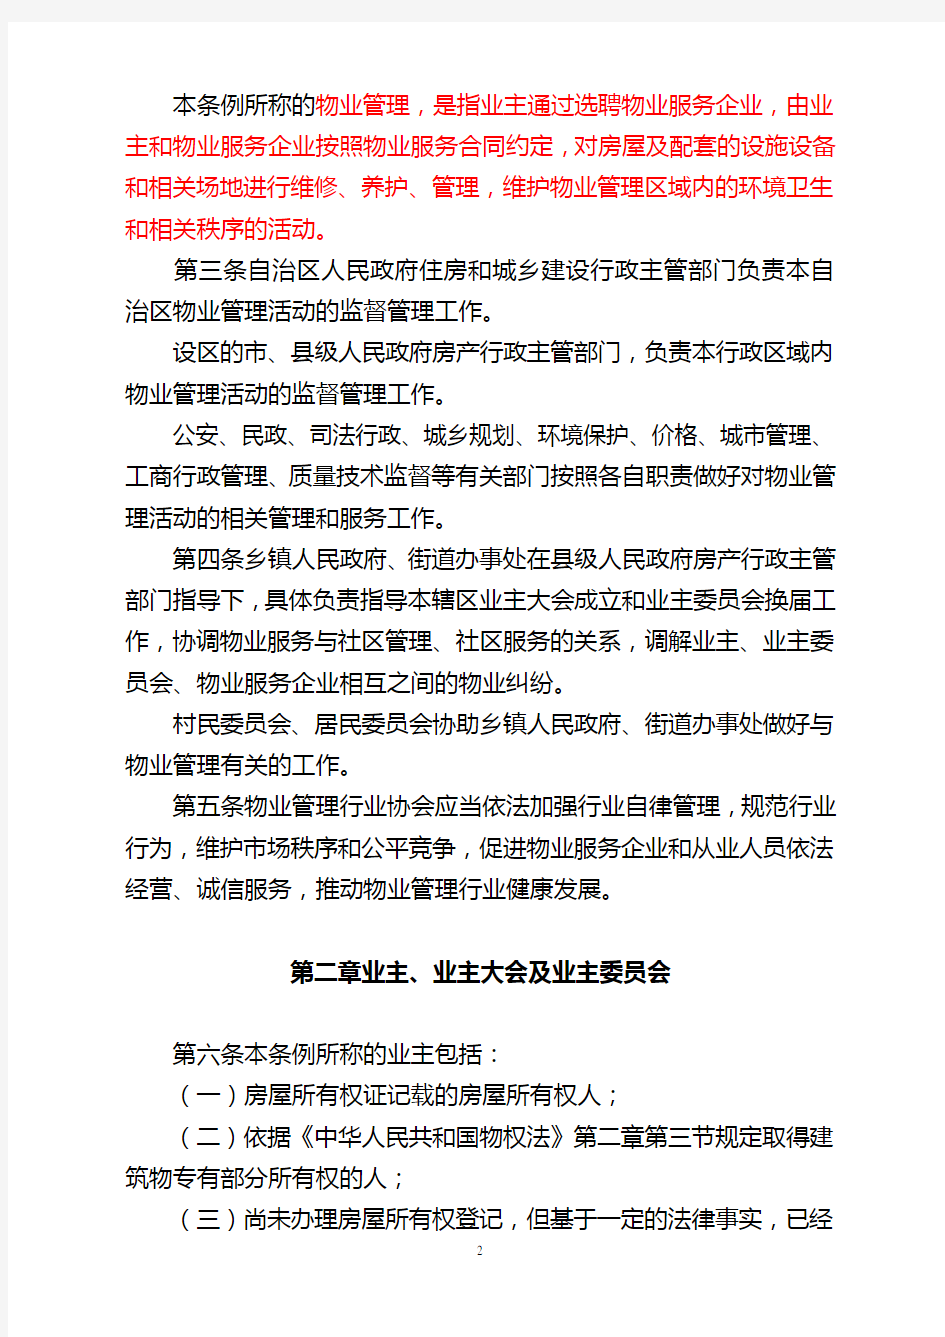 广西壮族自治区物业管理条例(2012修订稿)